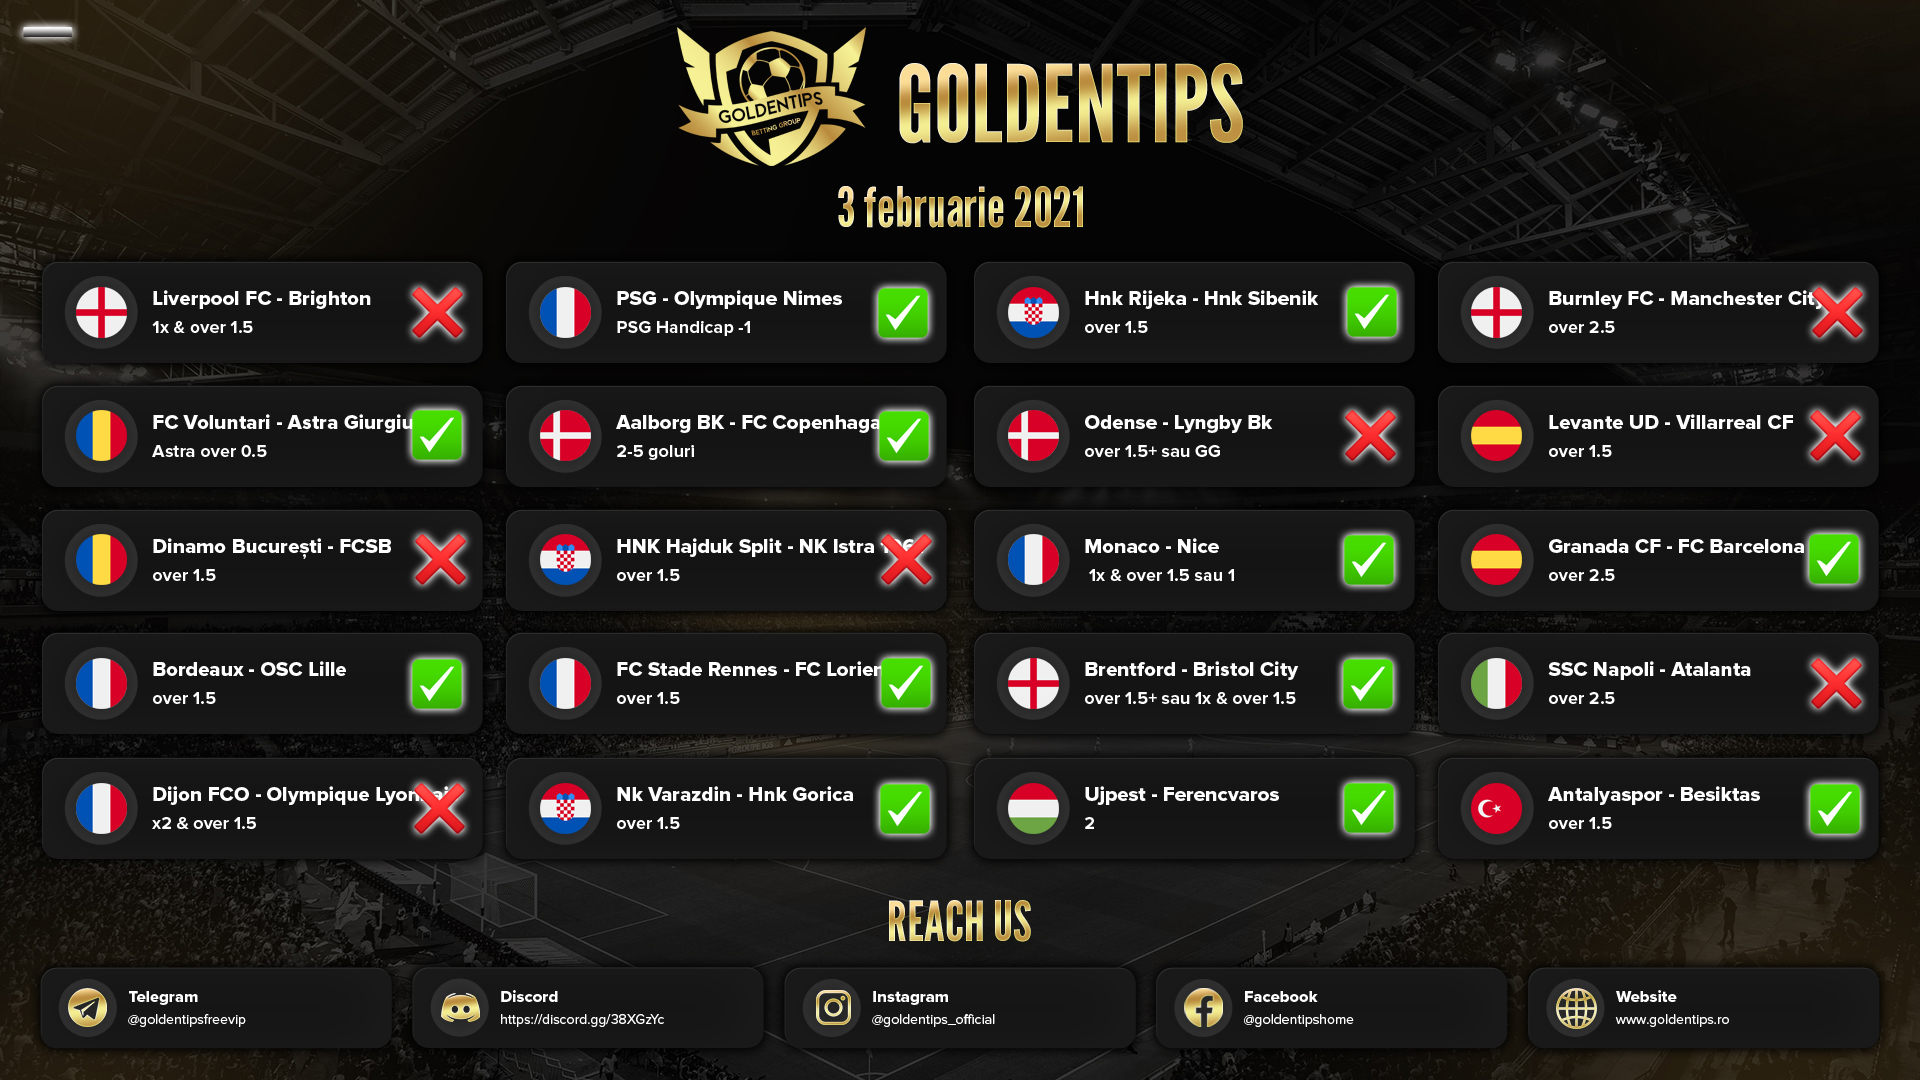 Golden Tips va ofera gratuit-Ponturi pariuri sportive sub forma Golden Tips Pronostics 03.02.2021. Alege-le pe cele care te inspira si WIN!